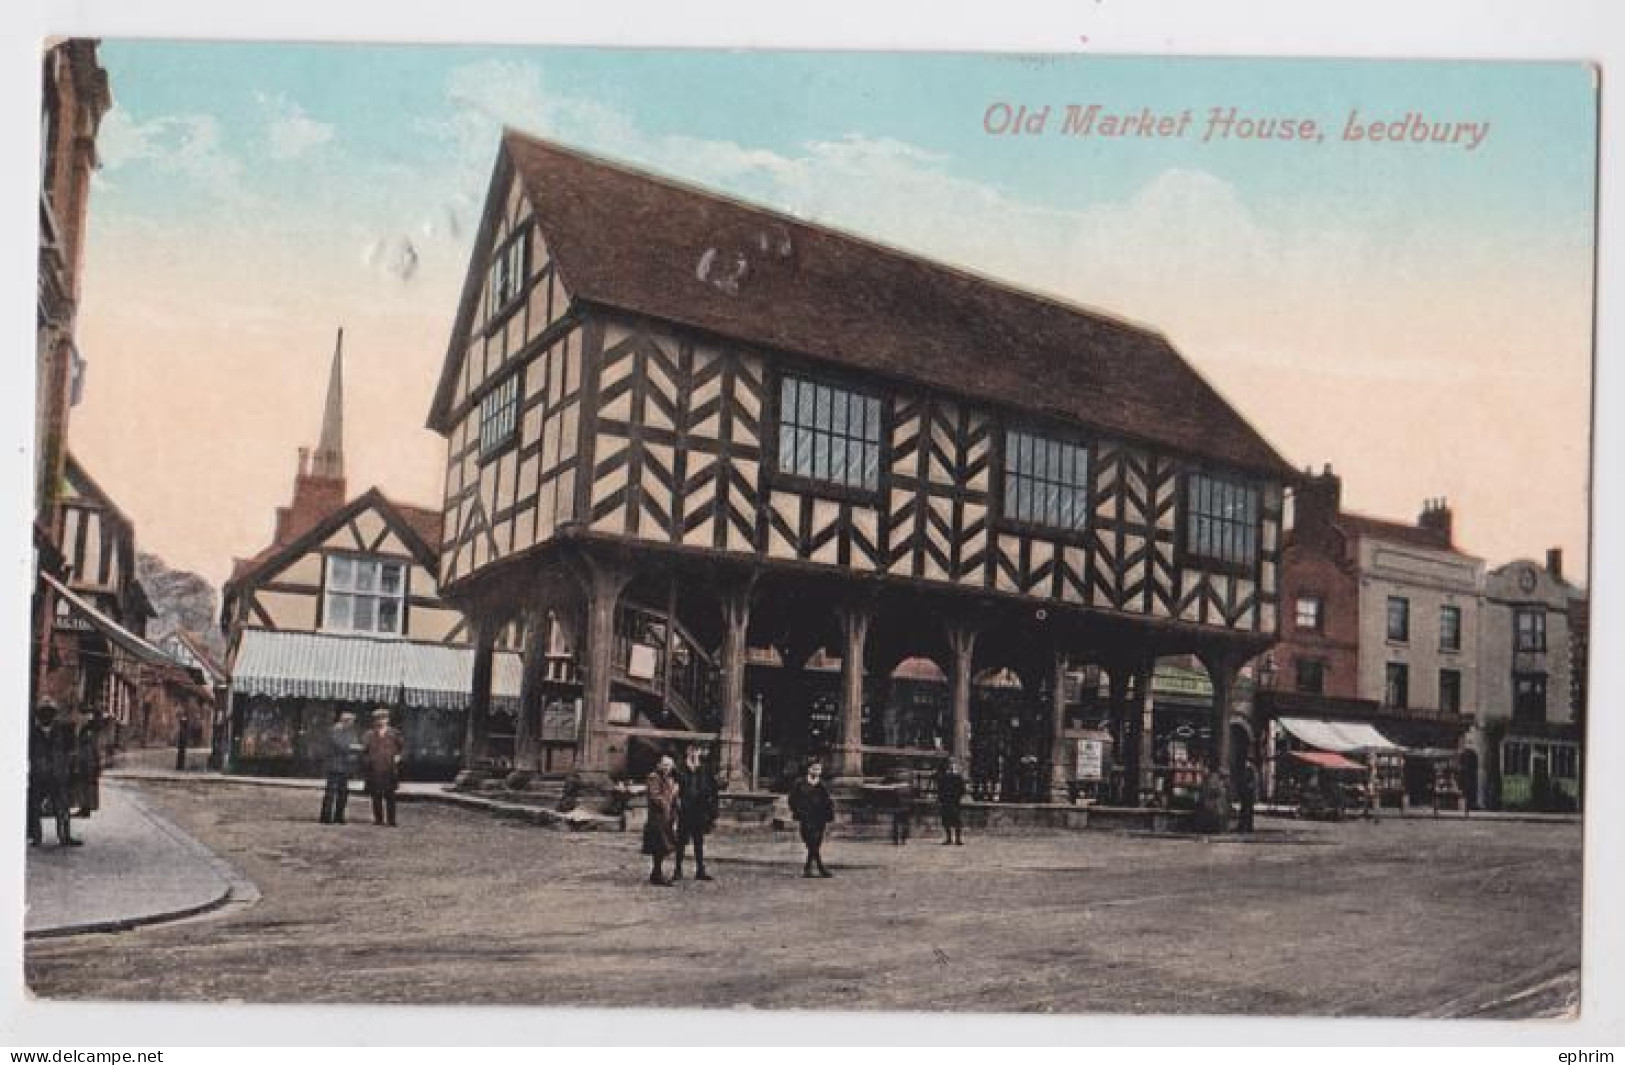 Ledbury Old Market House - Herefordshire